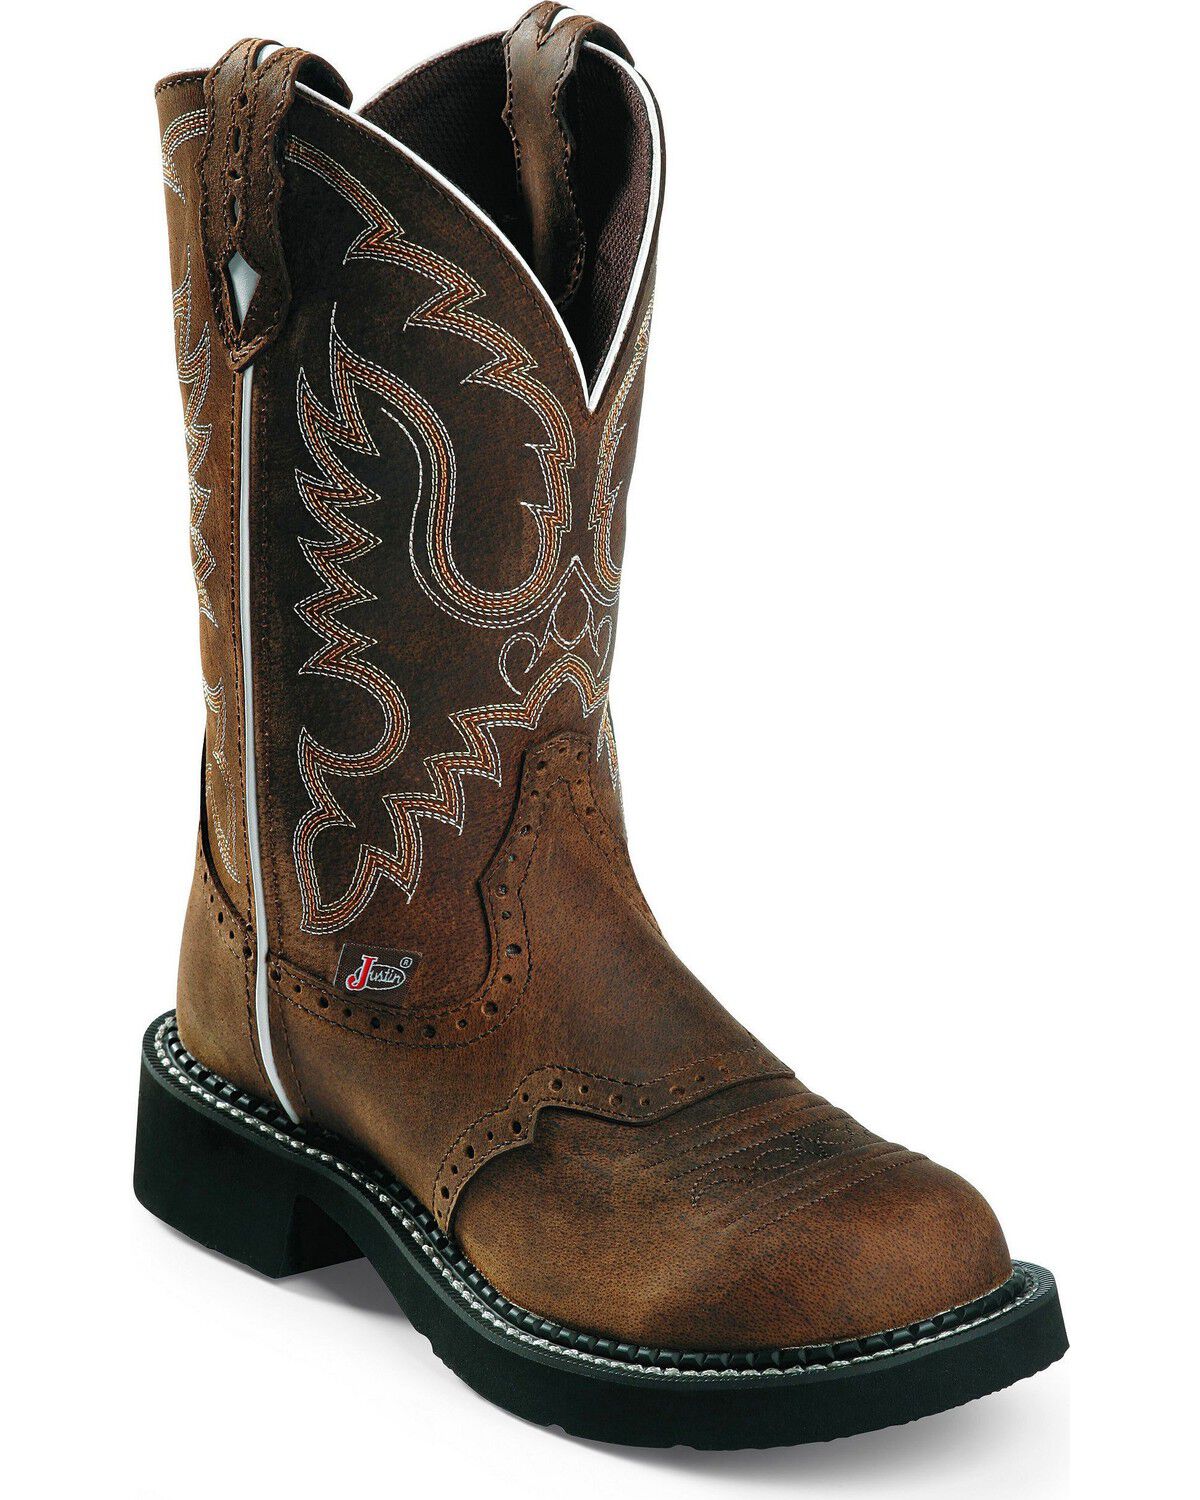 Justin Gypsy Cowboy Boots 7 12B